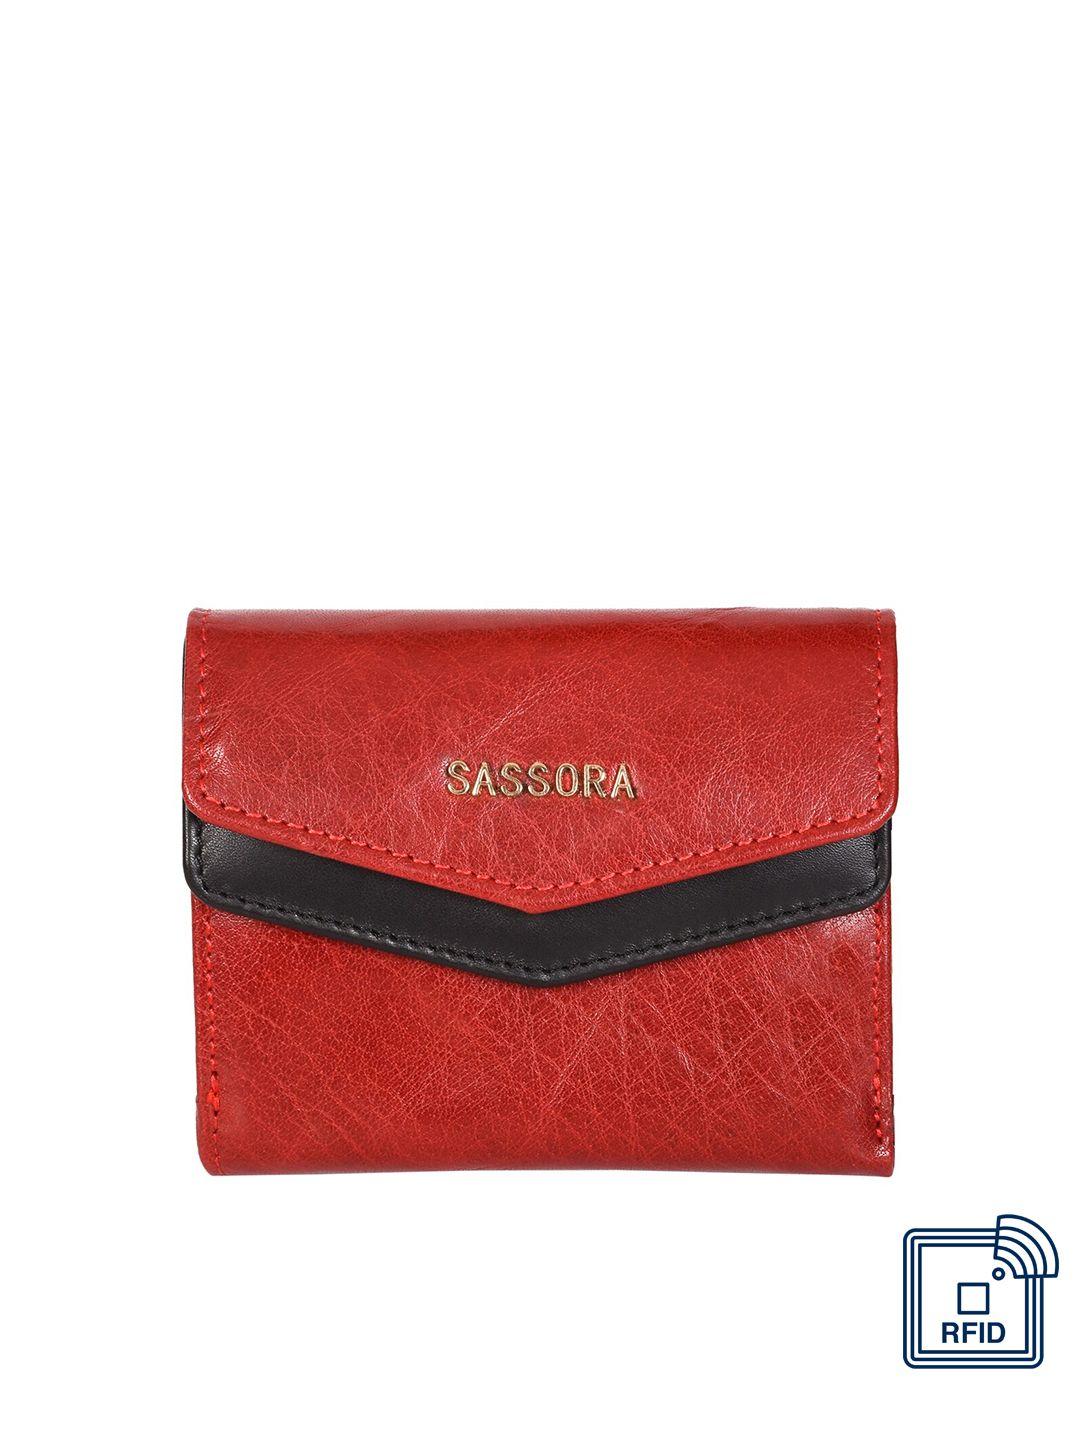 sassora women leather three fold wallet